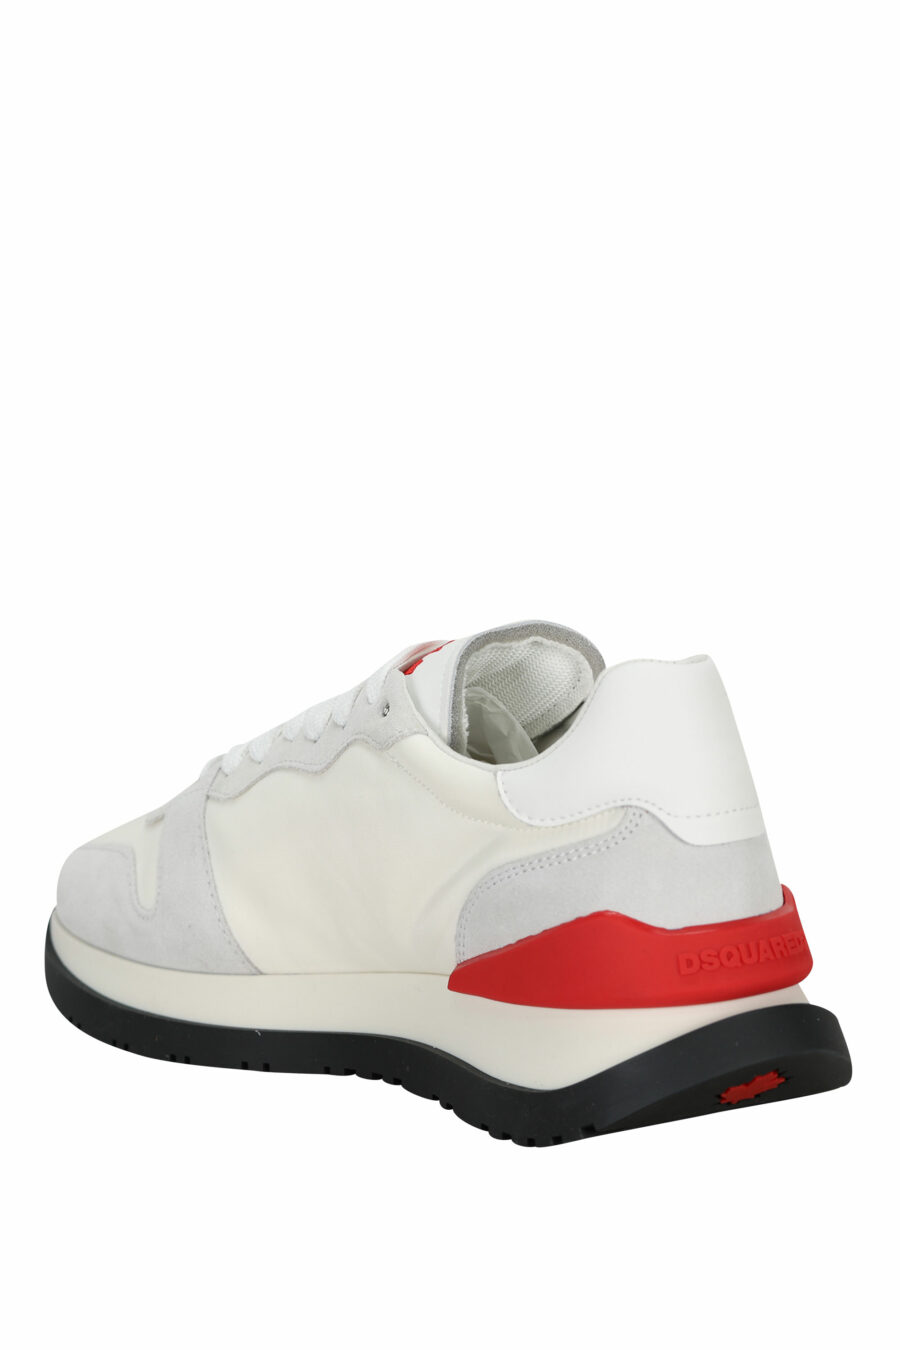 Zapatillas blancas mix con rojo y minilogo "icon" - 8055777303870 3